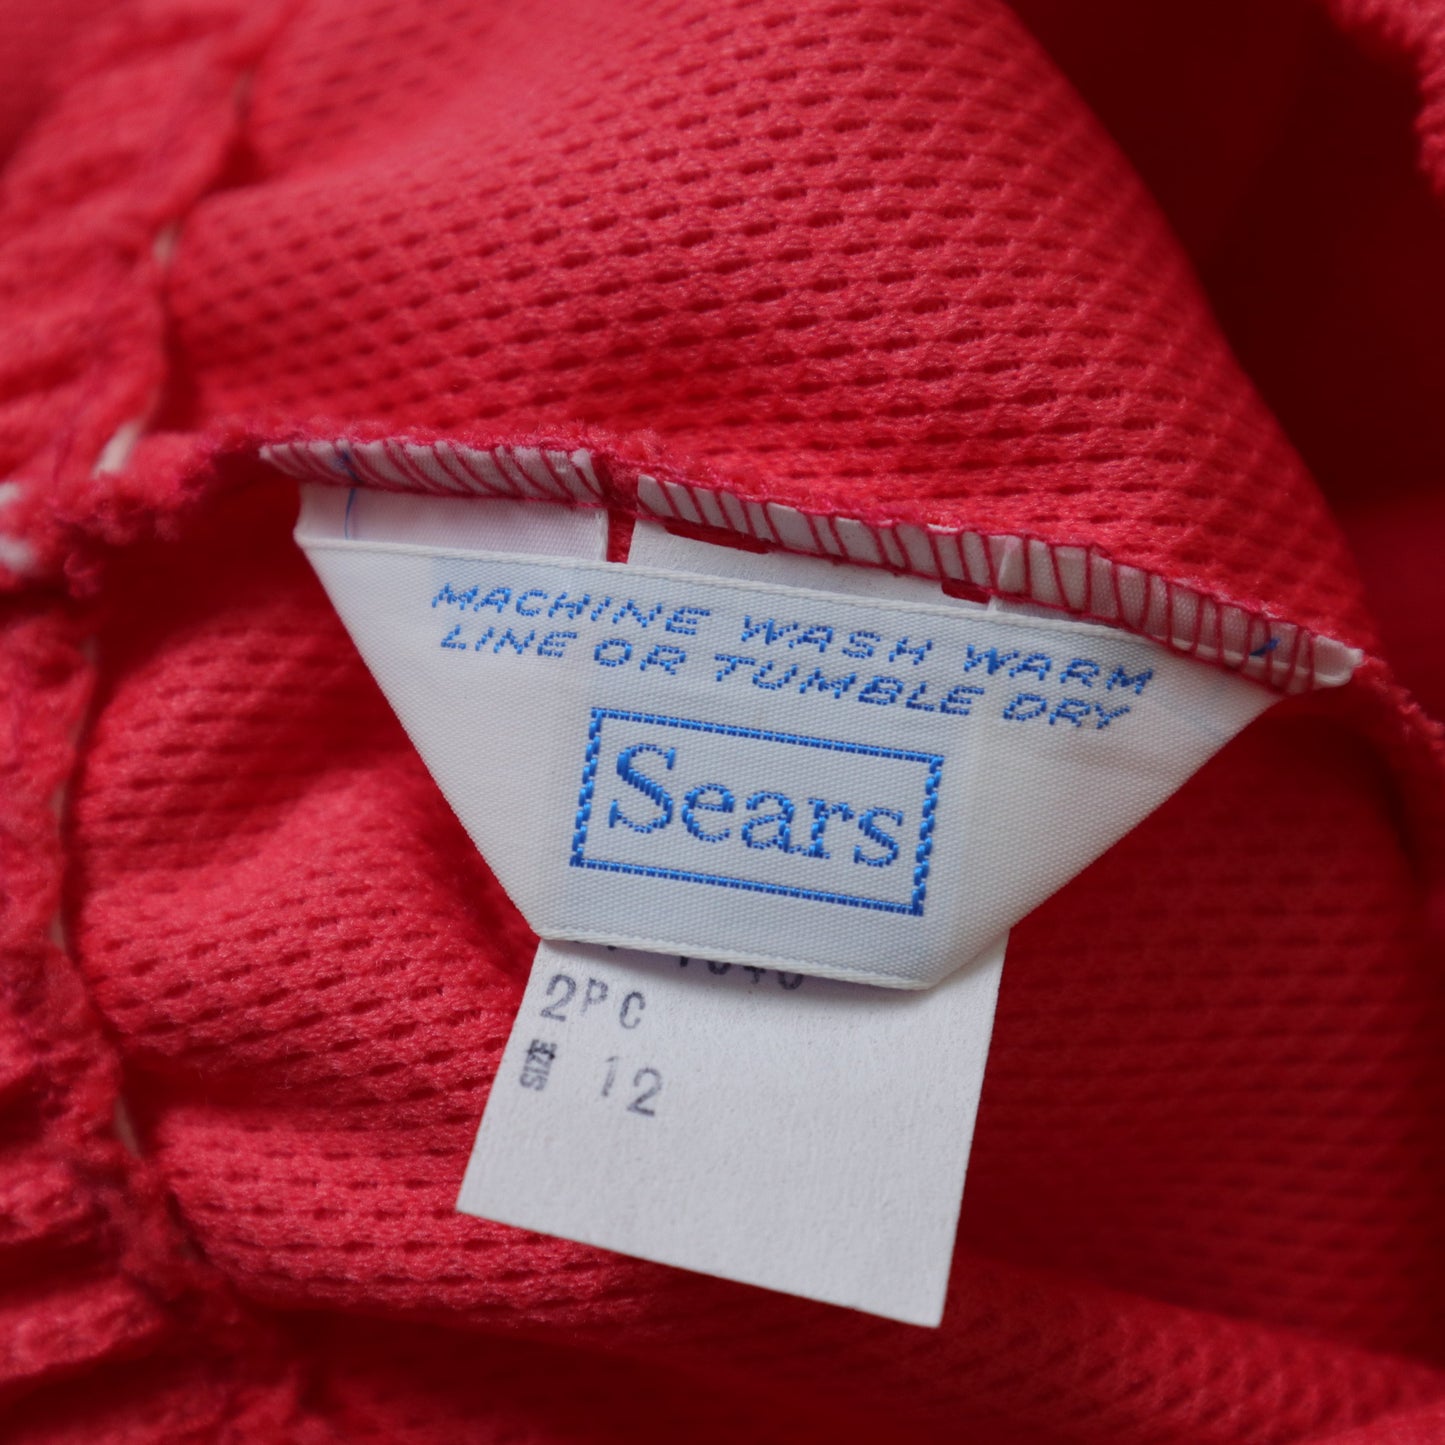 (26-33W) 70s SEARS 橘紅色聚酯纖維長褲